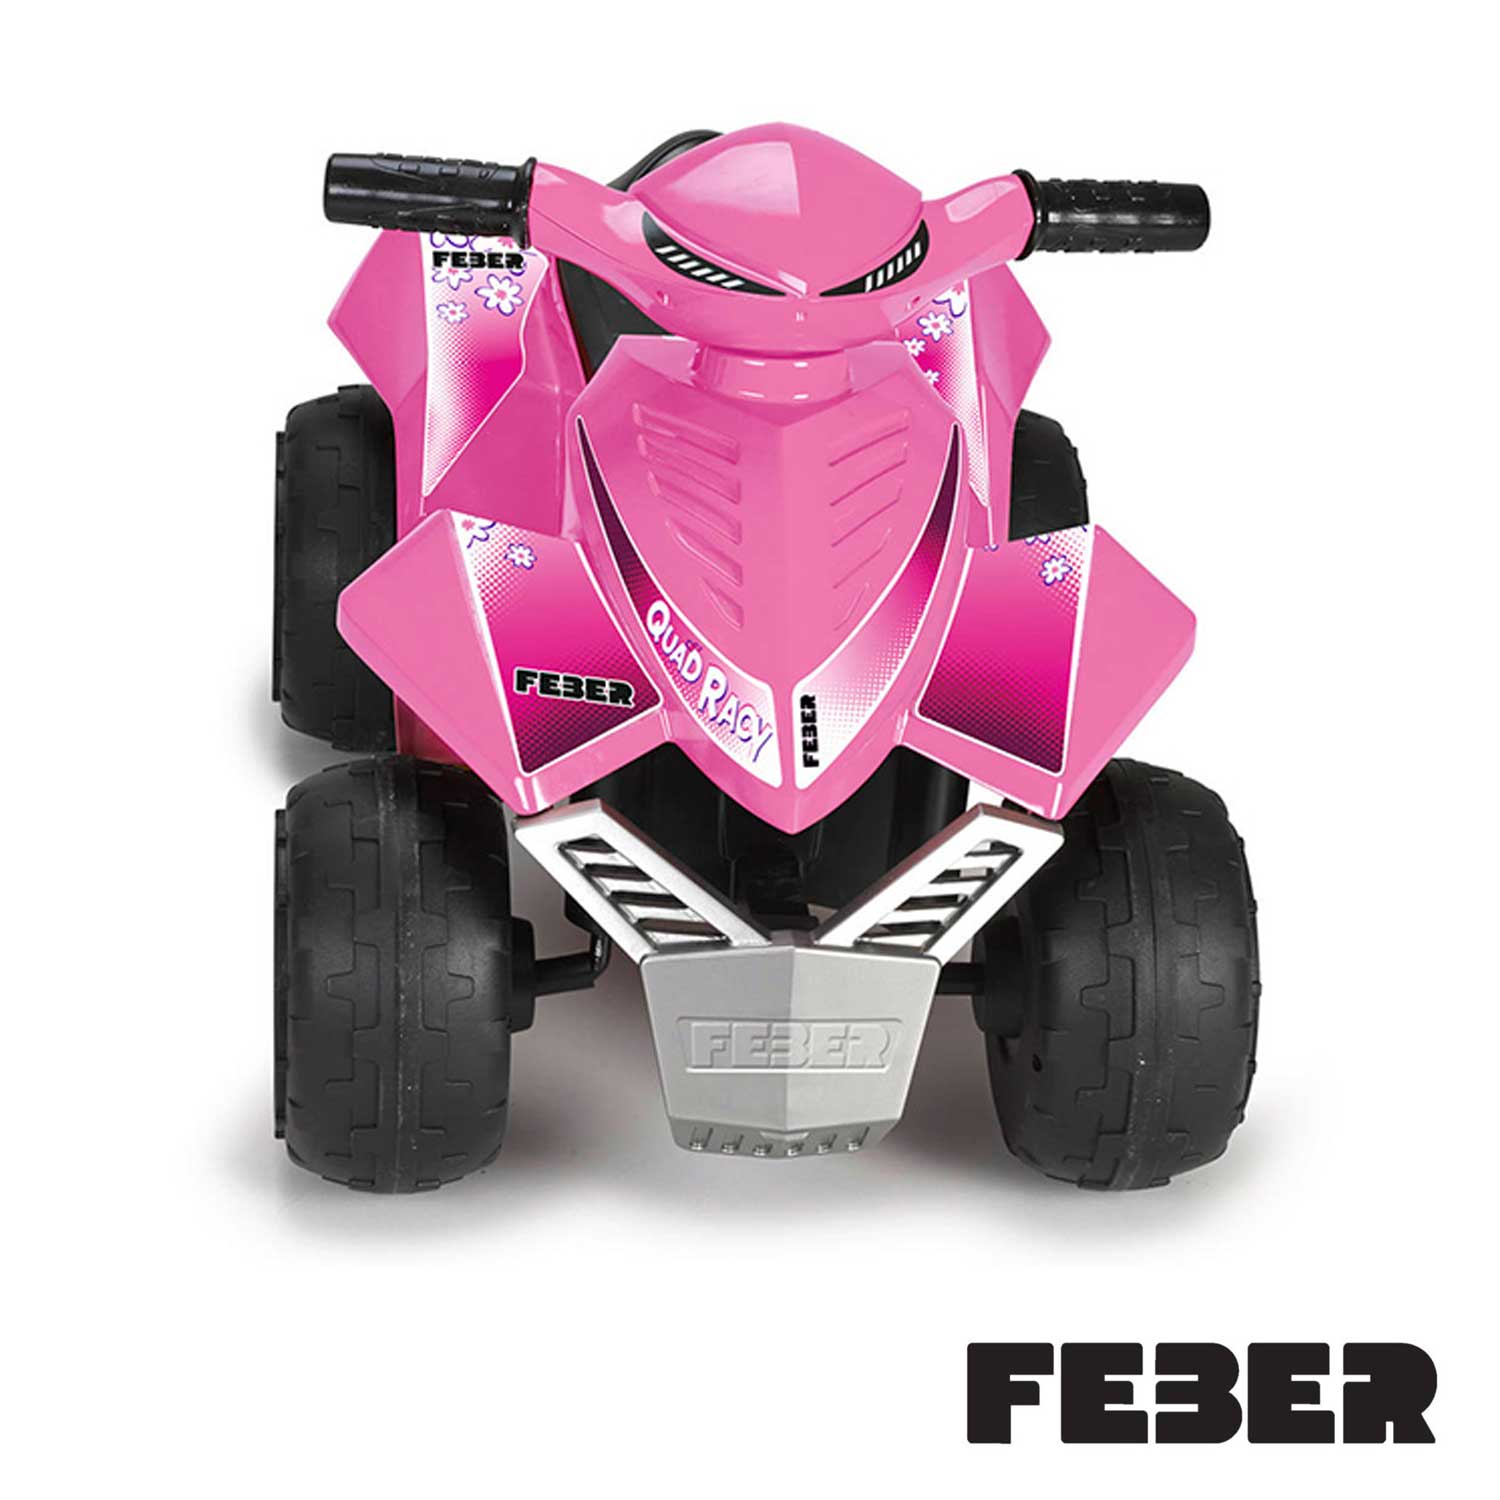 Feber - Quad Racy Pink 6v